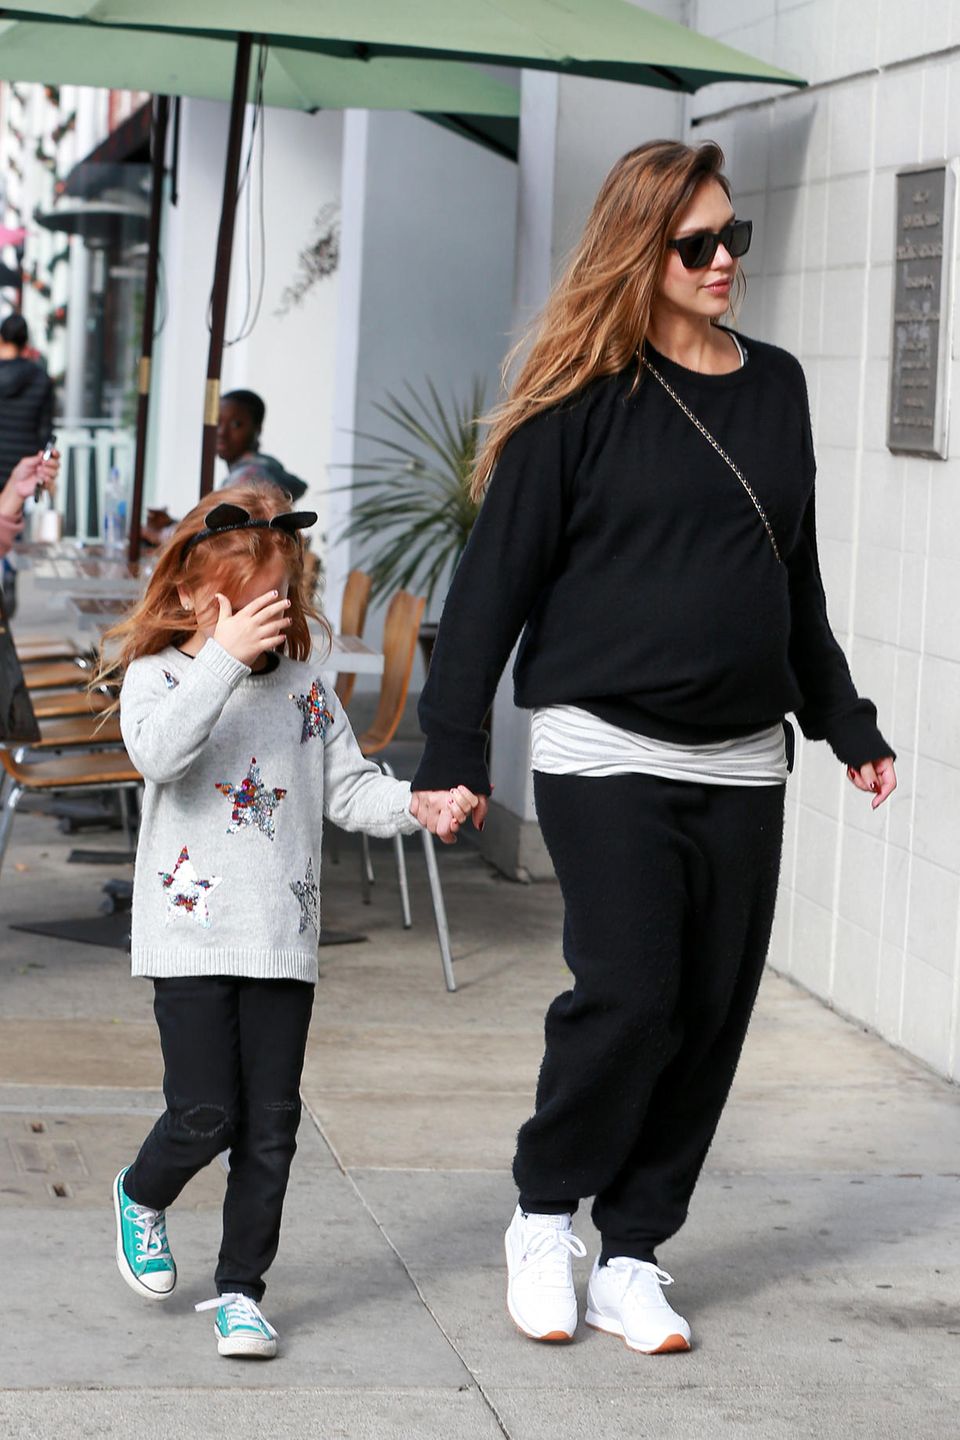 Sportlich in Schwarz-Weiß ist die hochschwangere Jessica Alba mit Töchterchen Haven zum Mittagessen unterwegs.